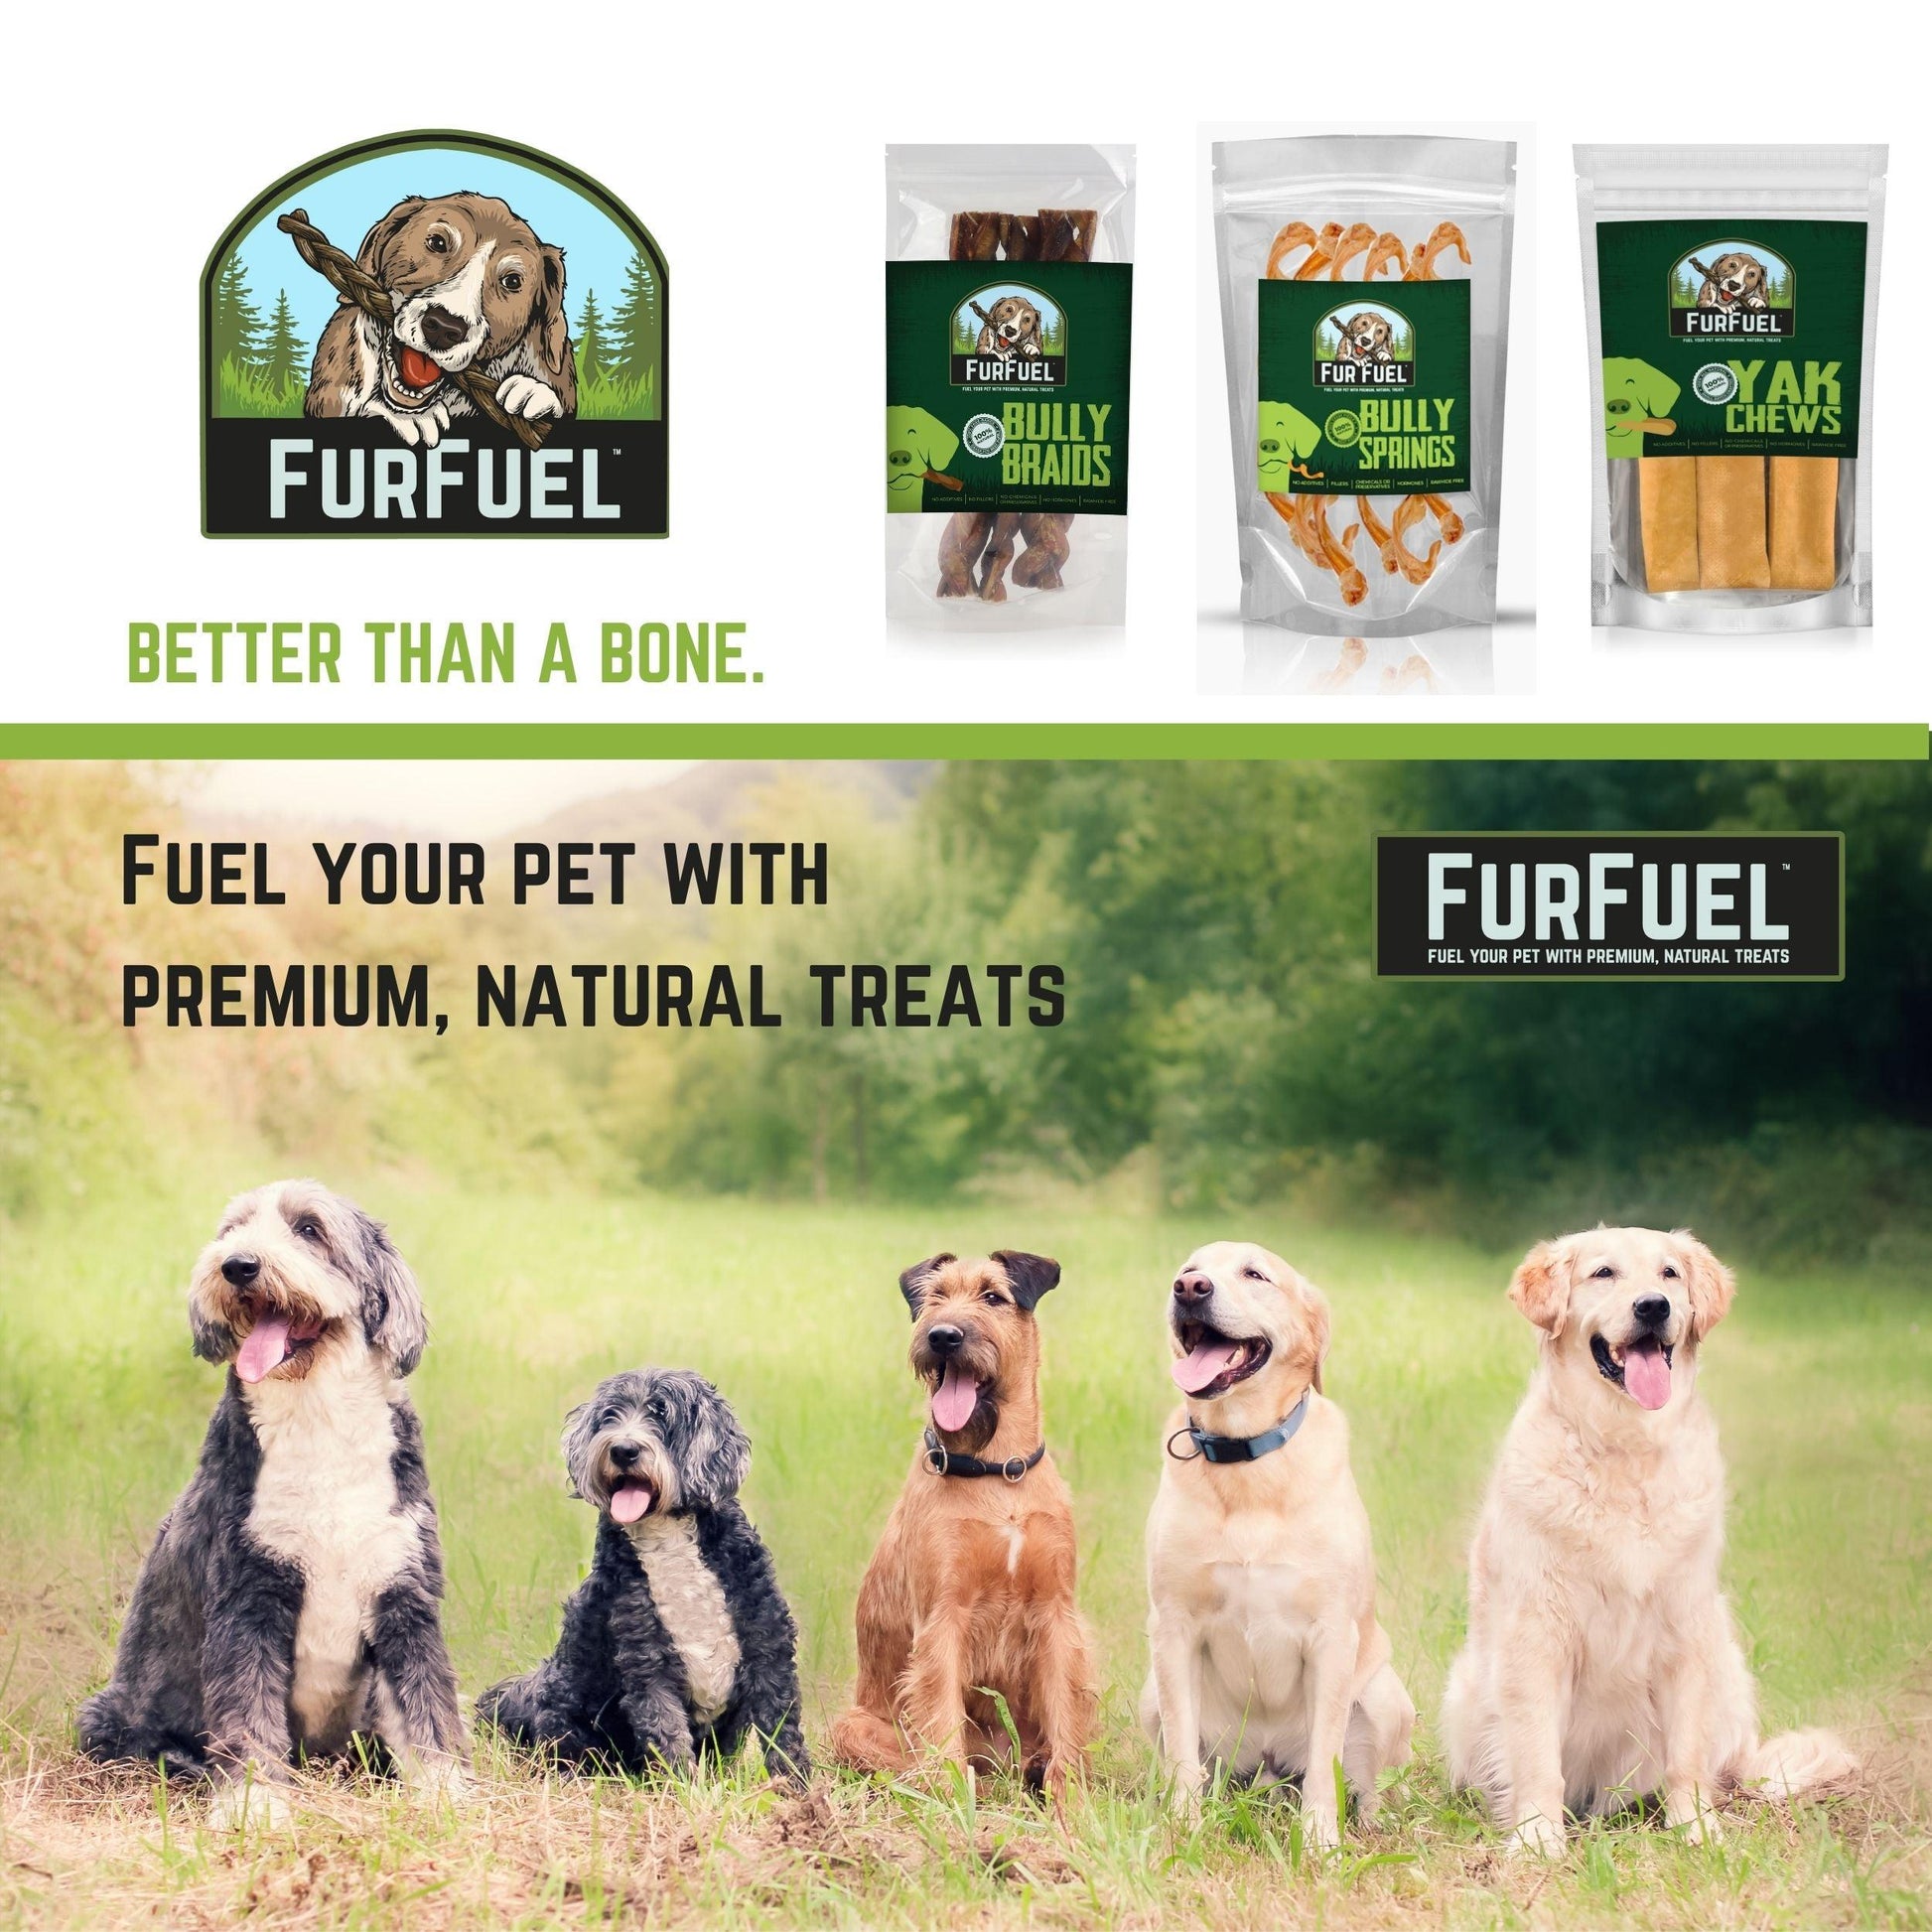 FurFuel Braided Bully Sticks, 6" Medium Braids for Dogs 30-70 lbs. - FurFuel